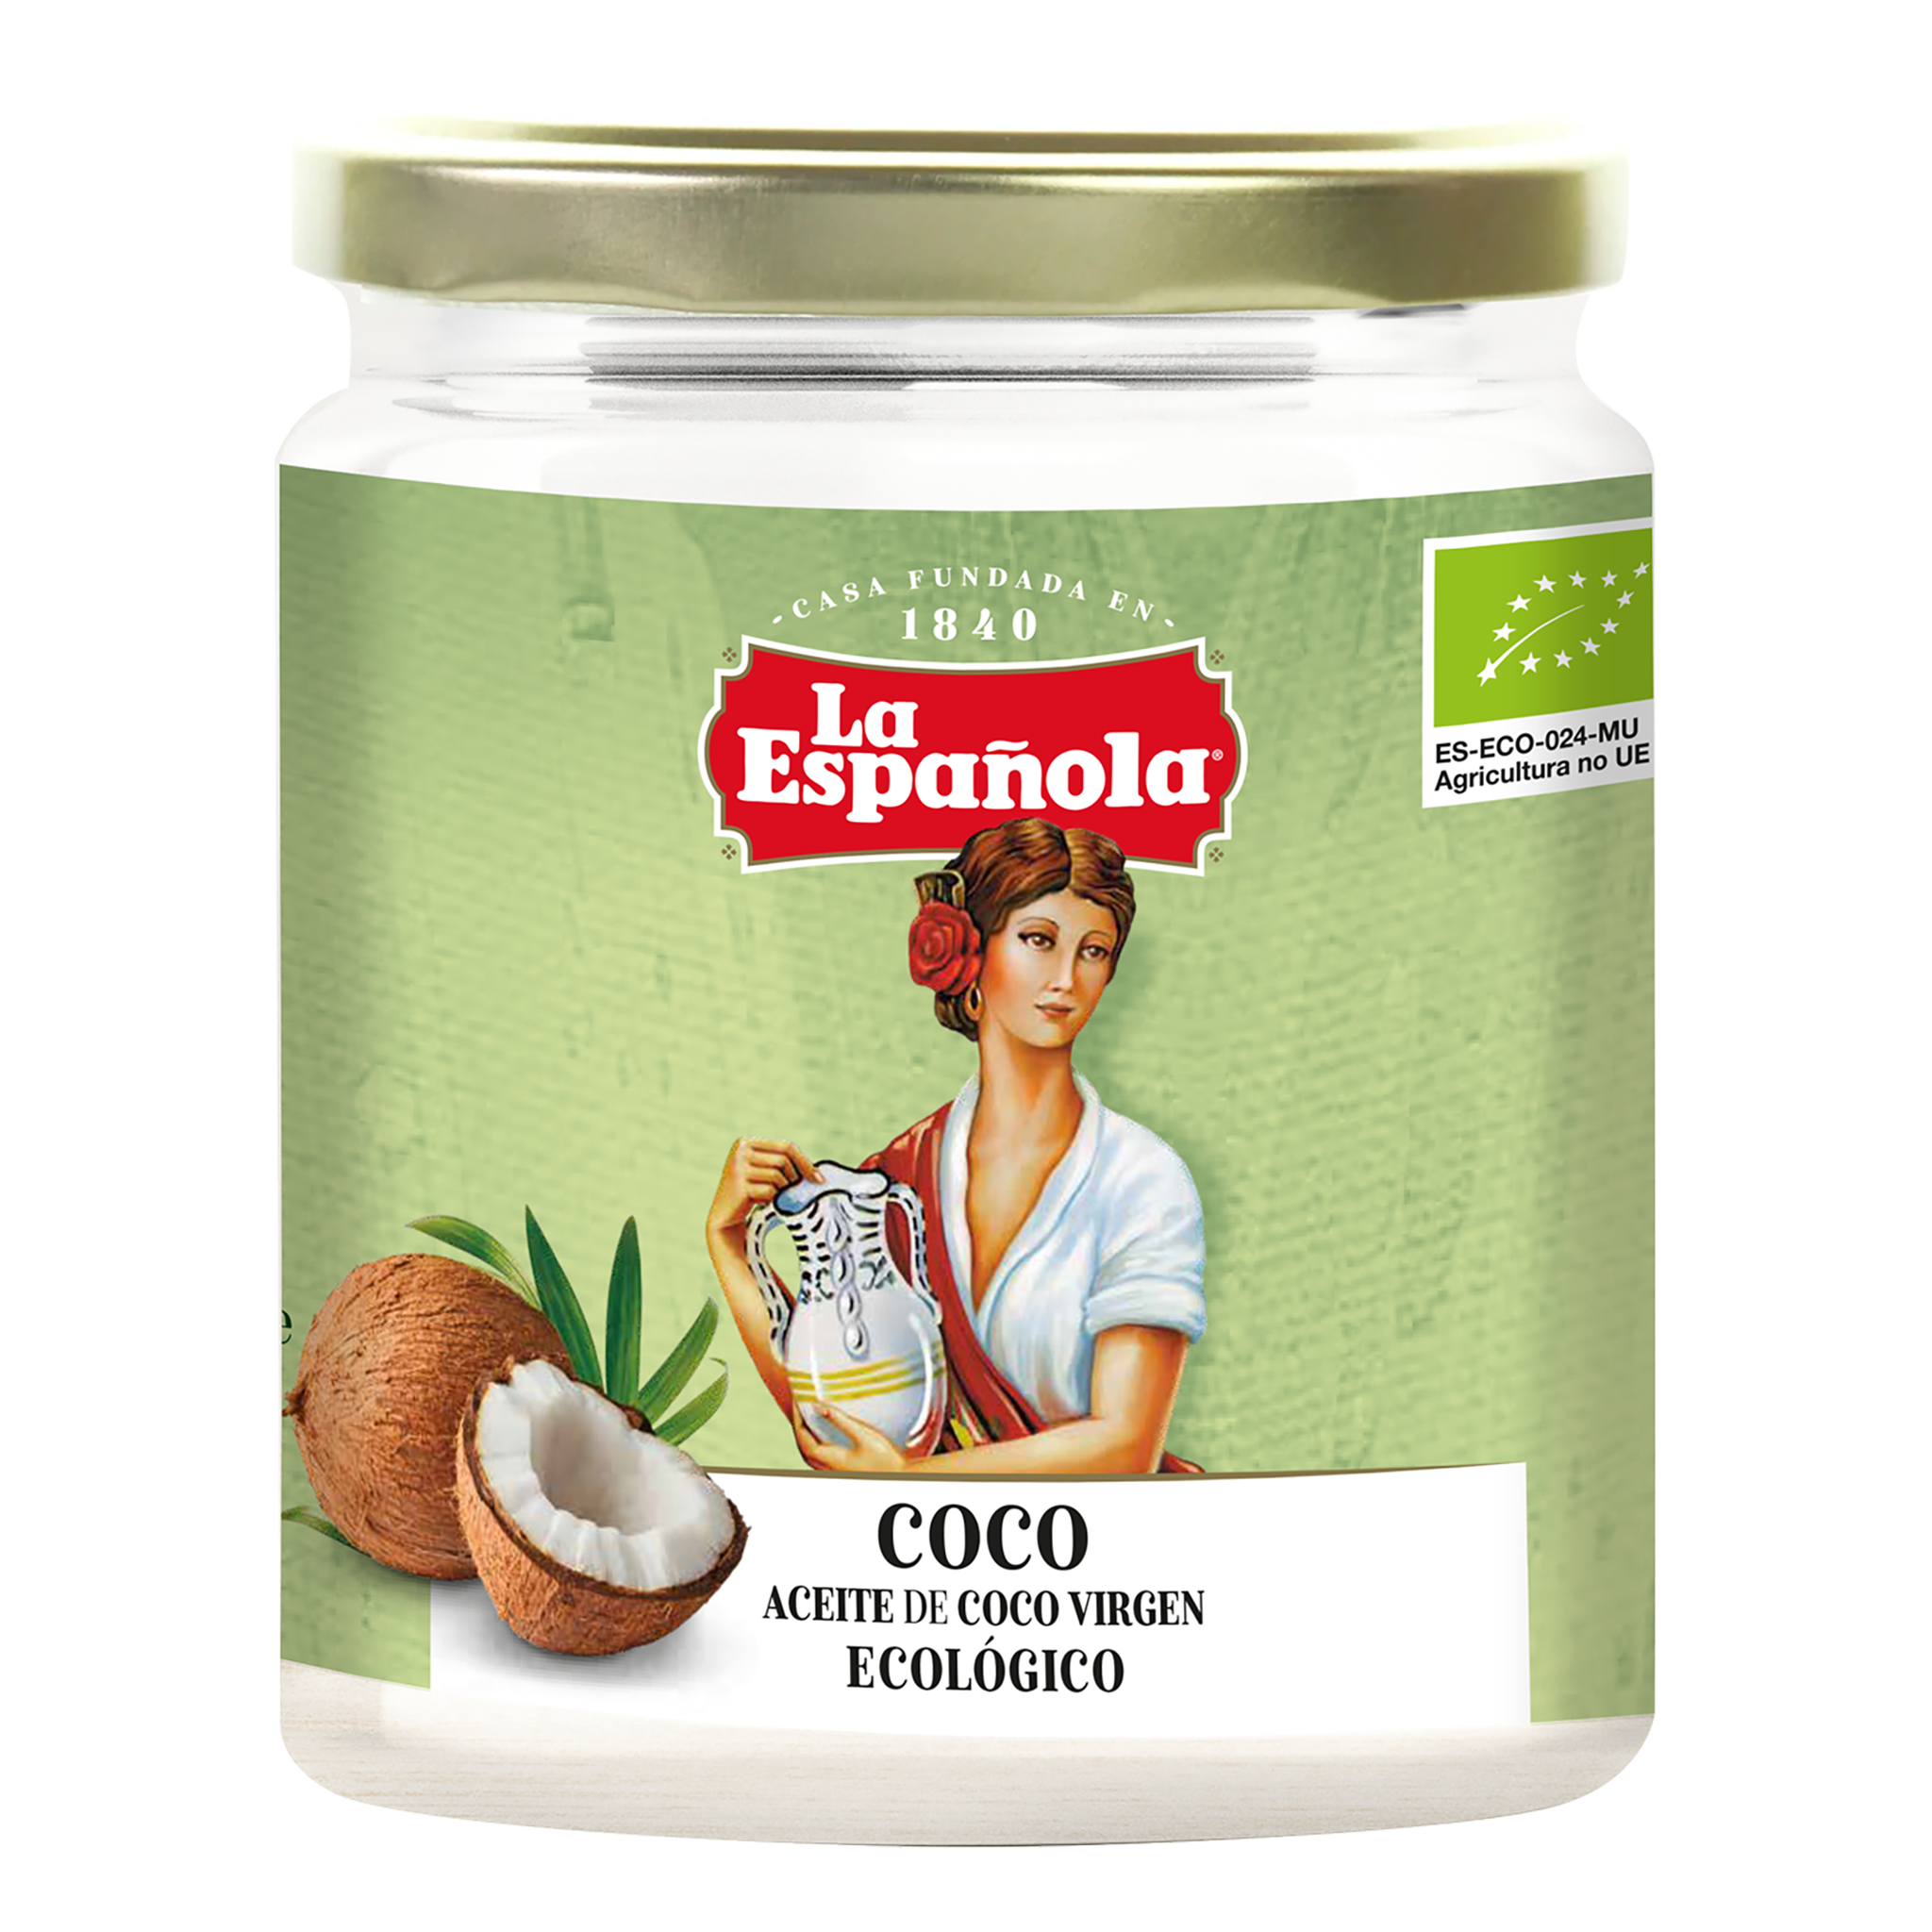 Aceite de coco orgánico virgen Soy Plus – La Española Aceites